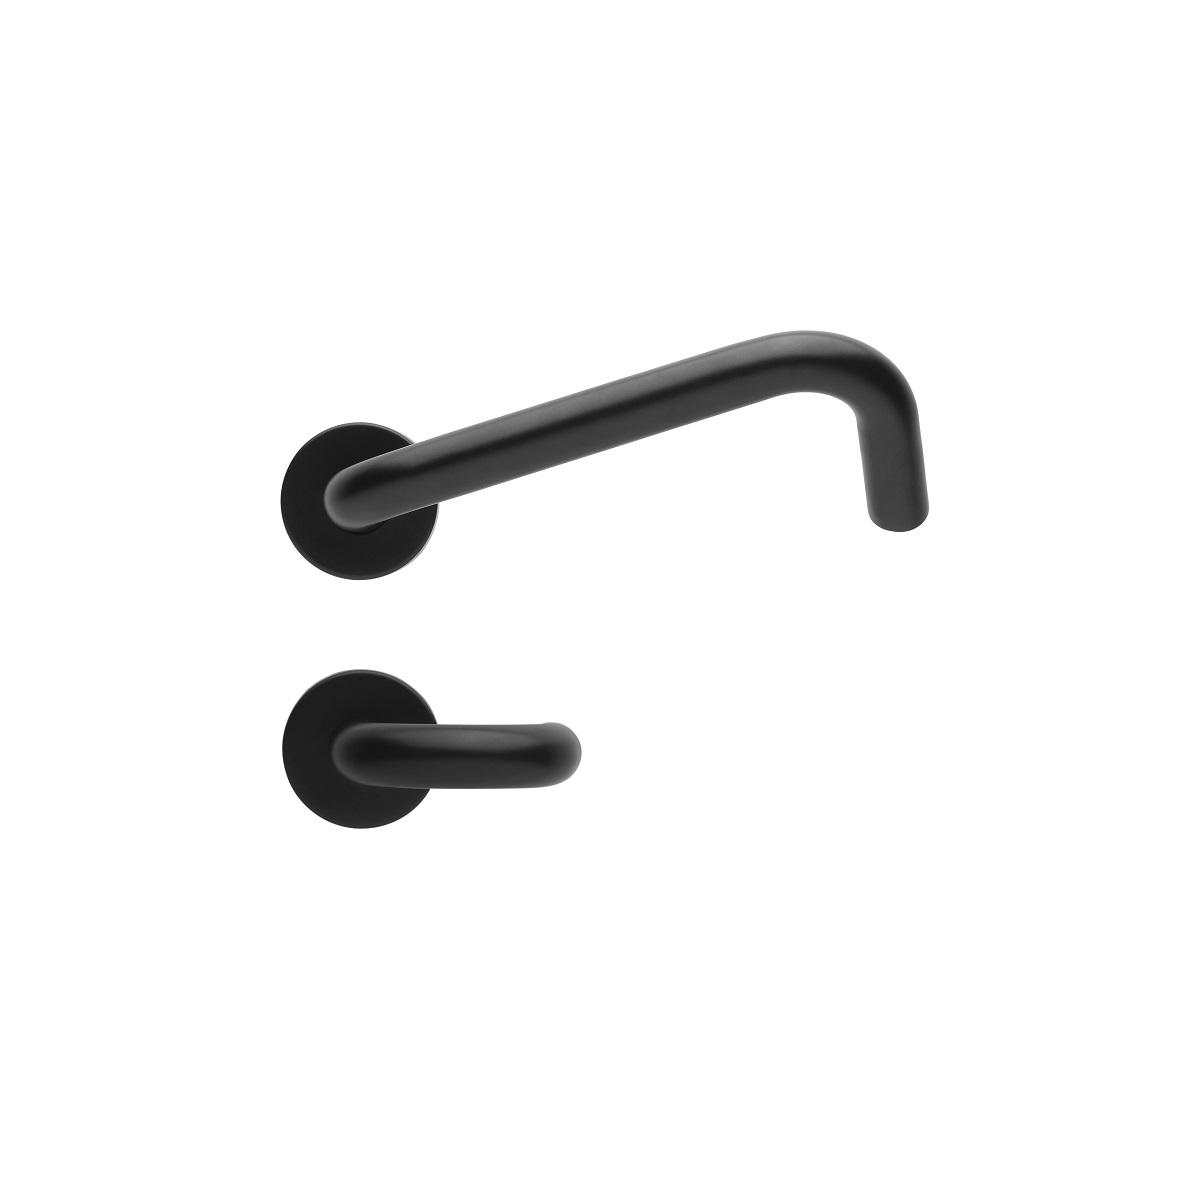 black minimalist metal handle by Häfele